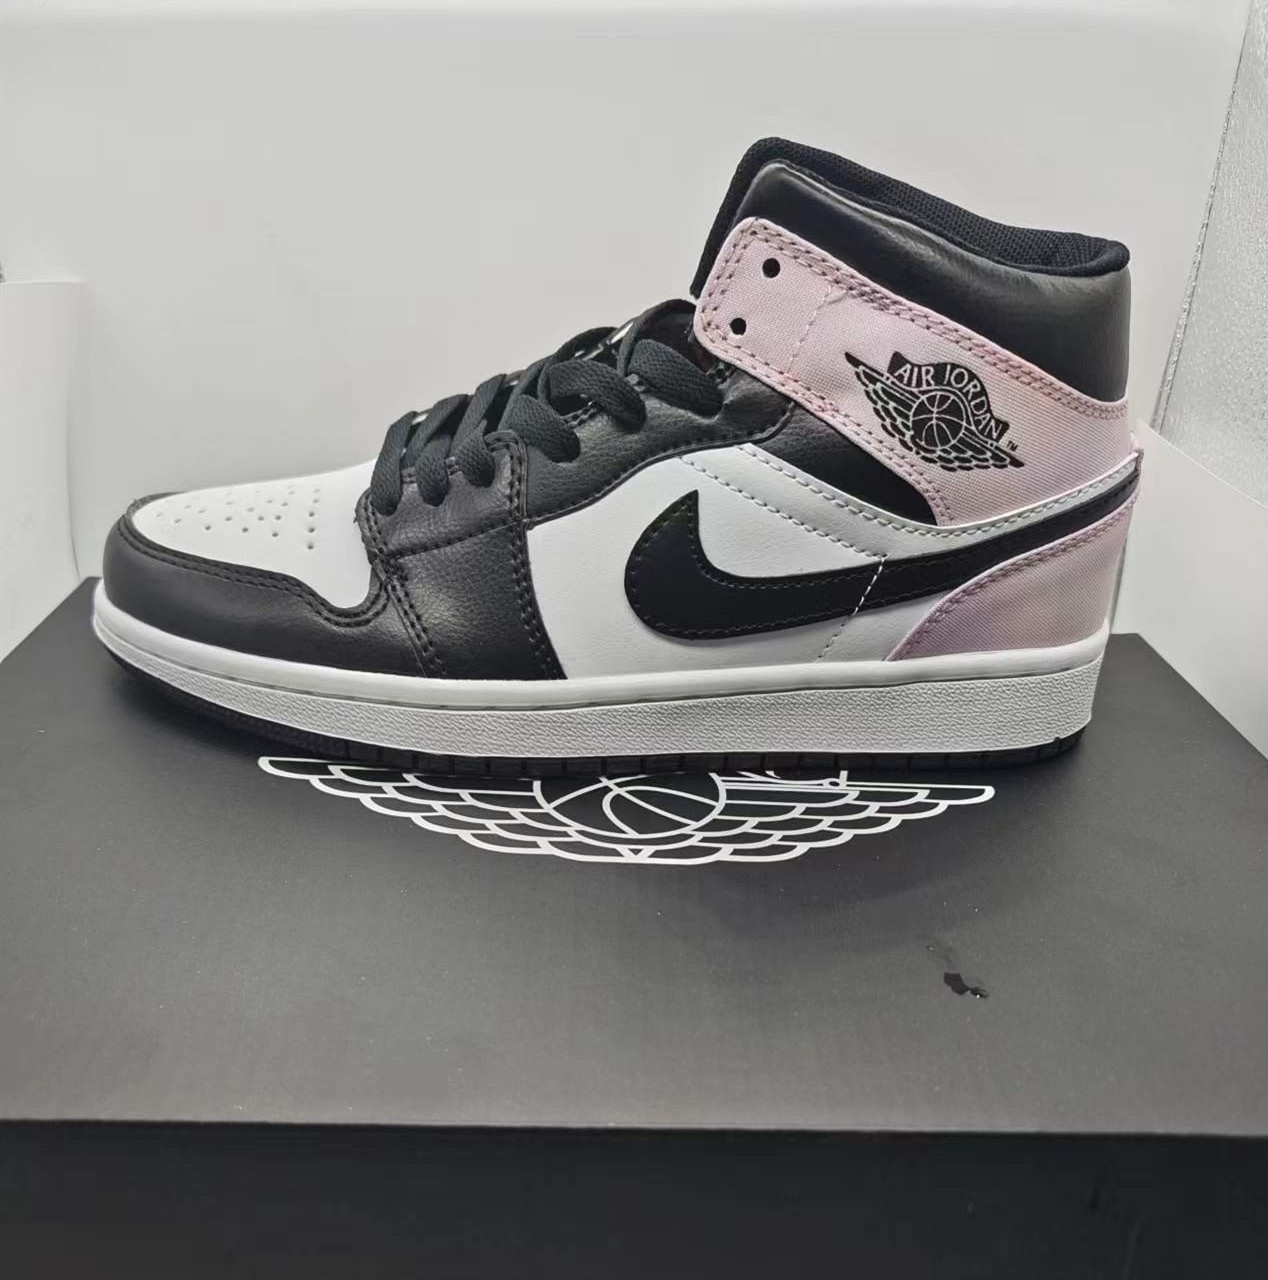 Women's Running Weapon Air Jordan 1 Black/Pink/White Shoes 0214